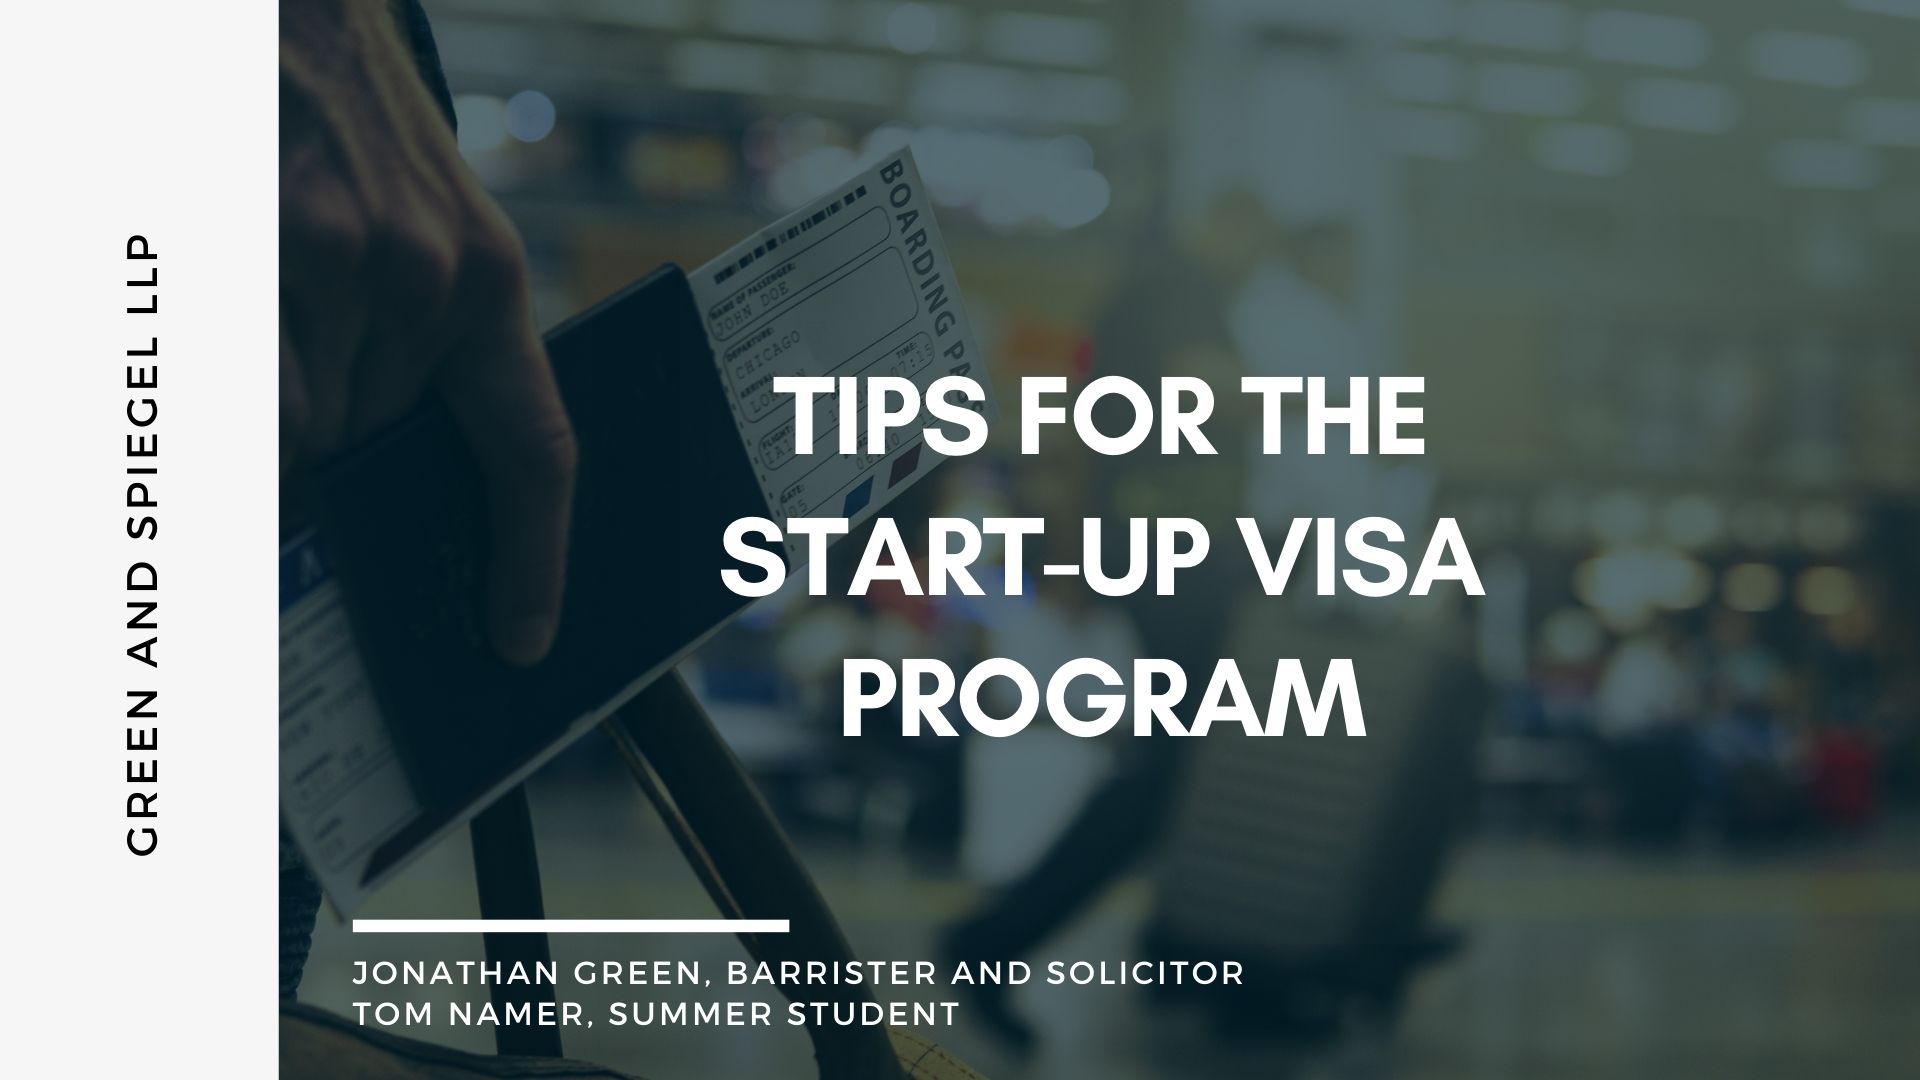 Tips for the Start-up Visa Program